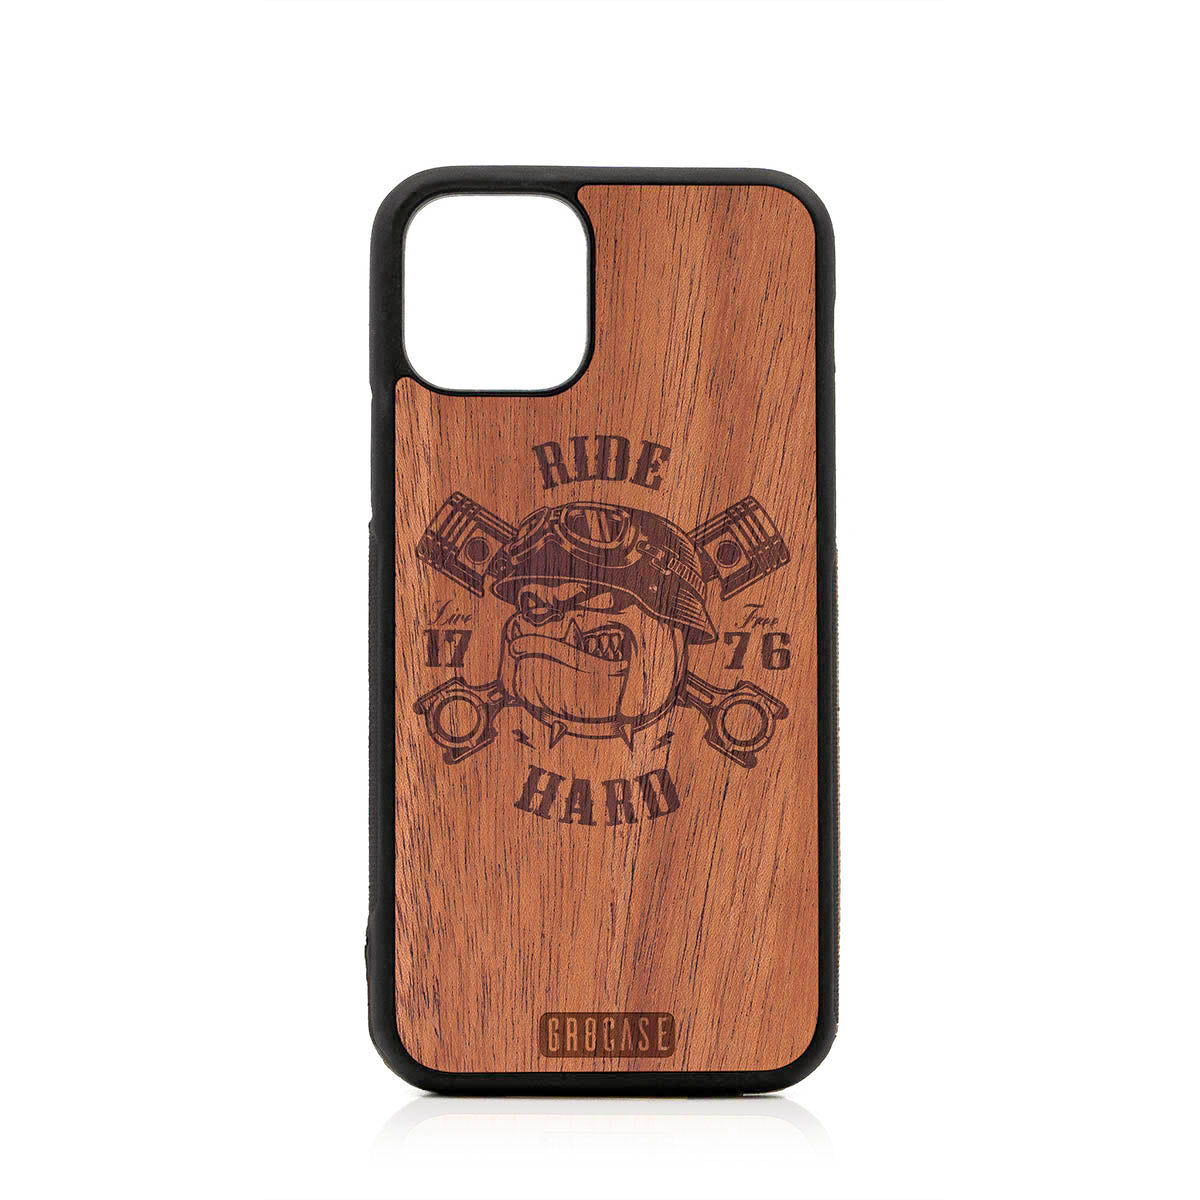 Ride Hard Live Free (Biker Dog) Design Wood Case For iPhone 11 Pro by GR8CASE